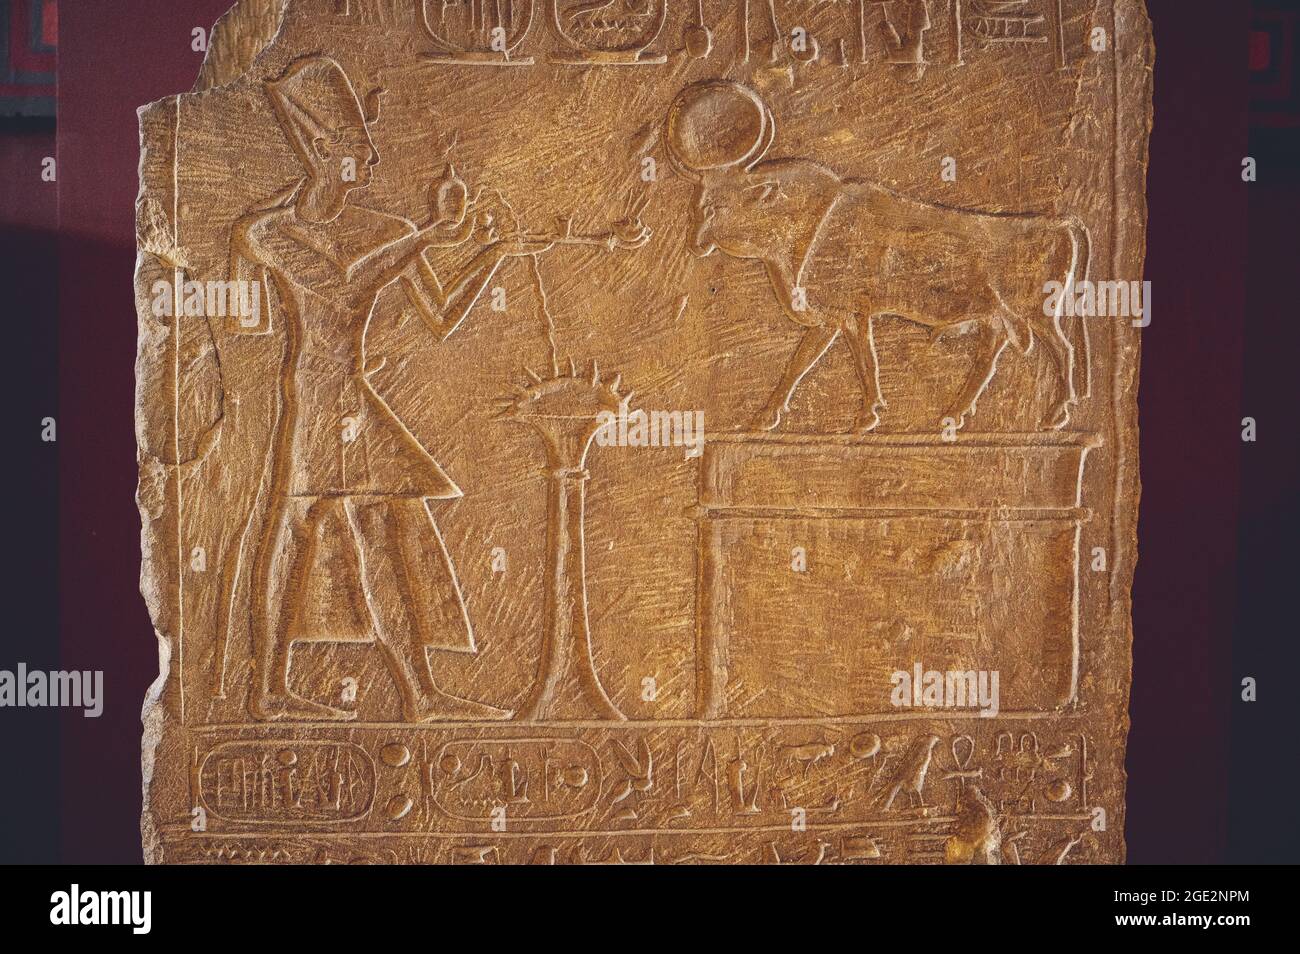 LE CAIRE, EGYPTE - 06 juin 2021 : une ancienne dalle de pierre dans le Musée égyptien du Caire avec un pharaon faisant une offrande à API Banque D'Images